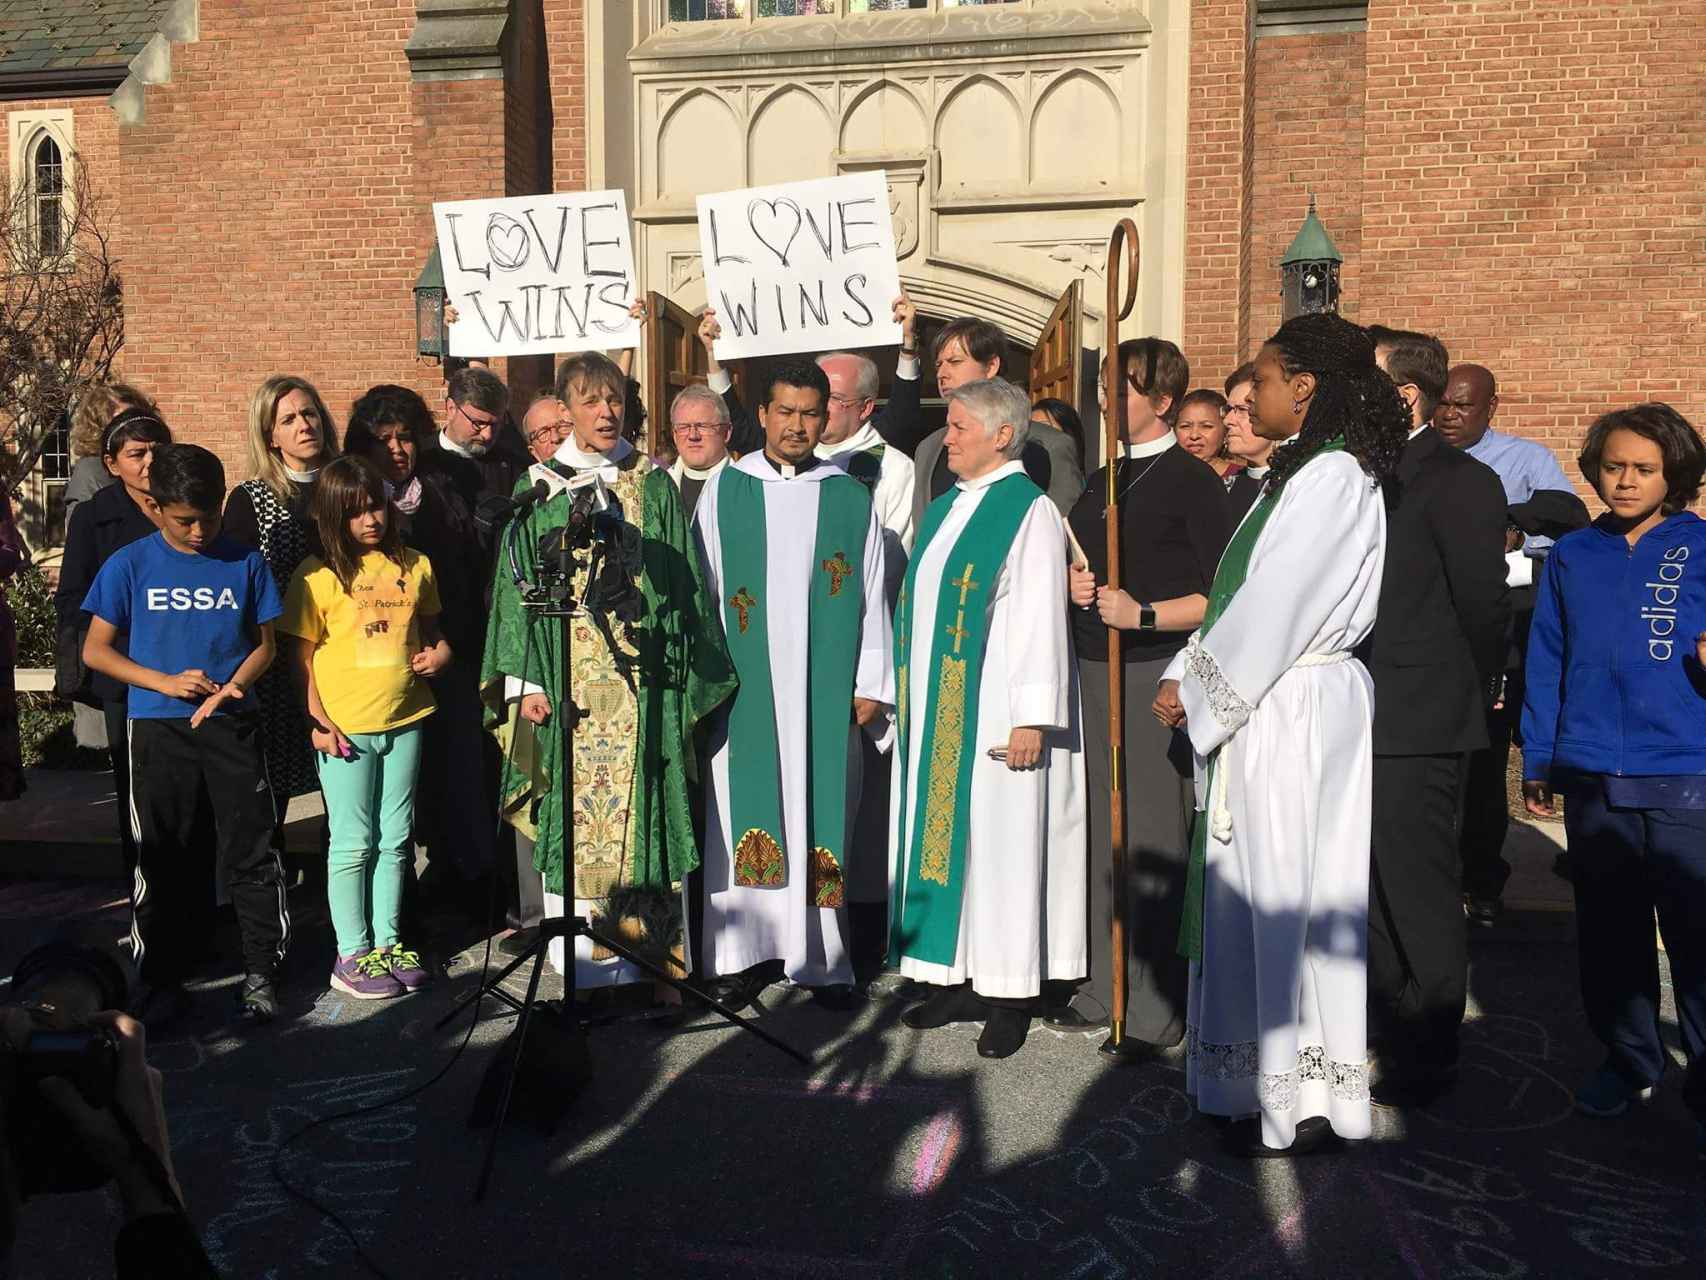 El amor vence, el lema con el padre Francisco (c) y su iglesia de Washington DC responde al odio.